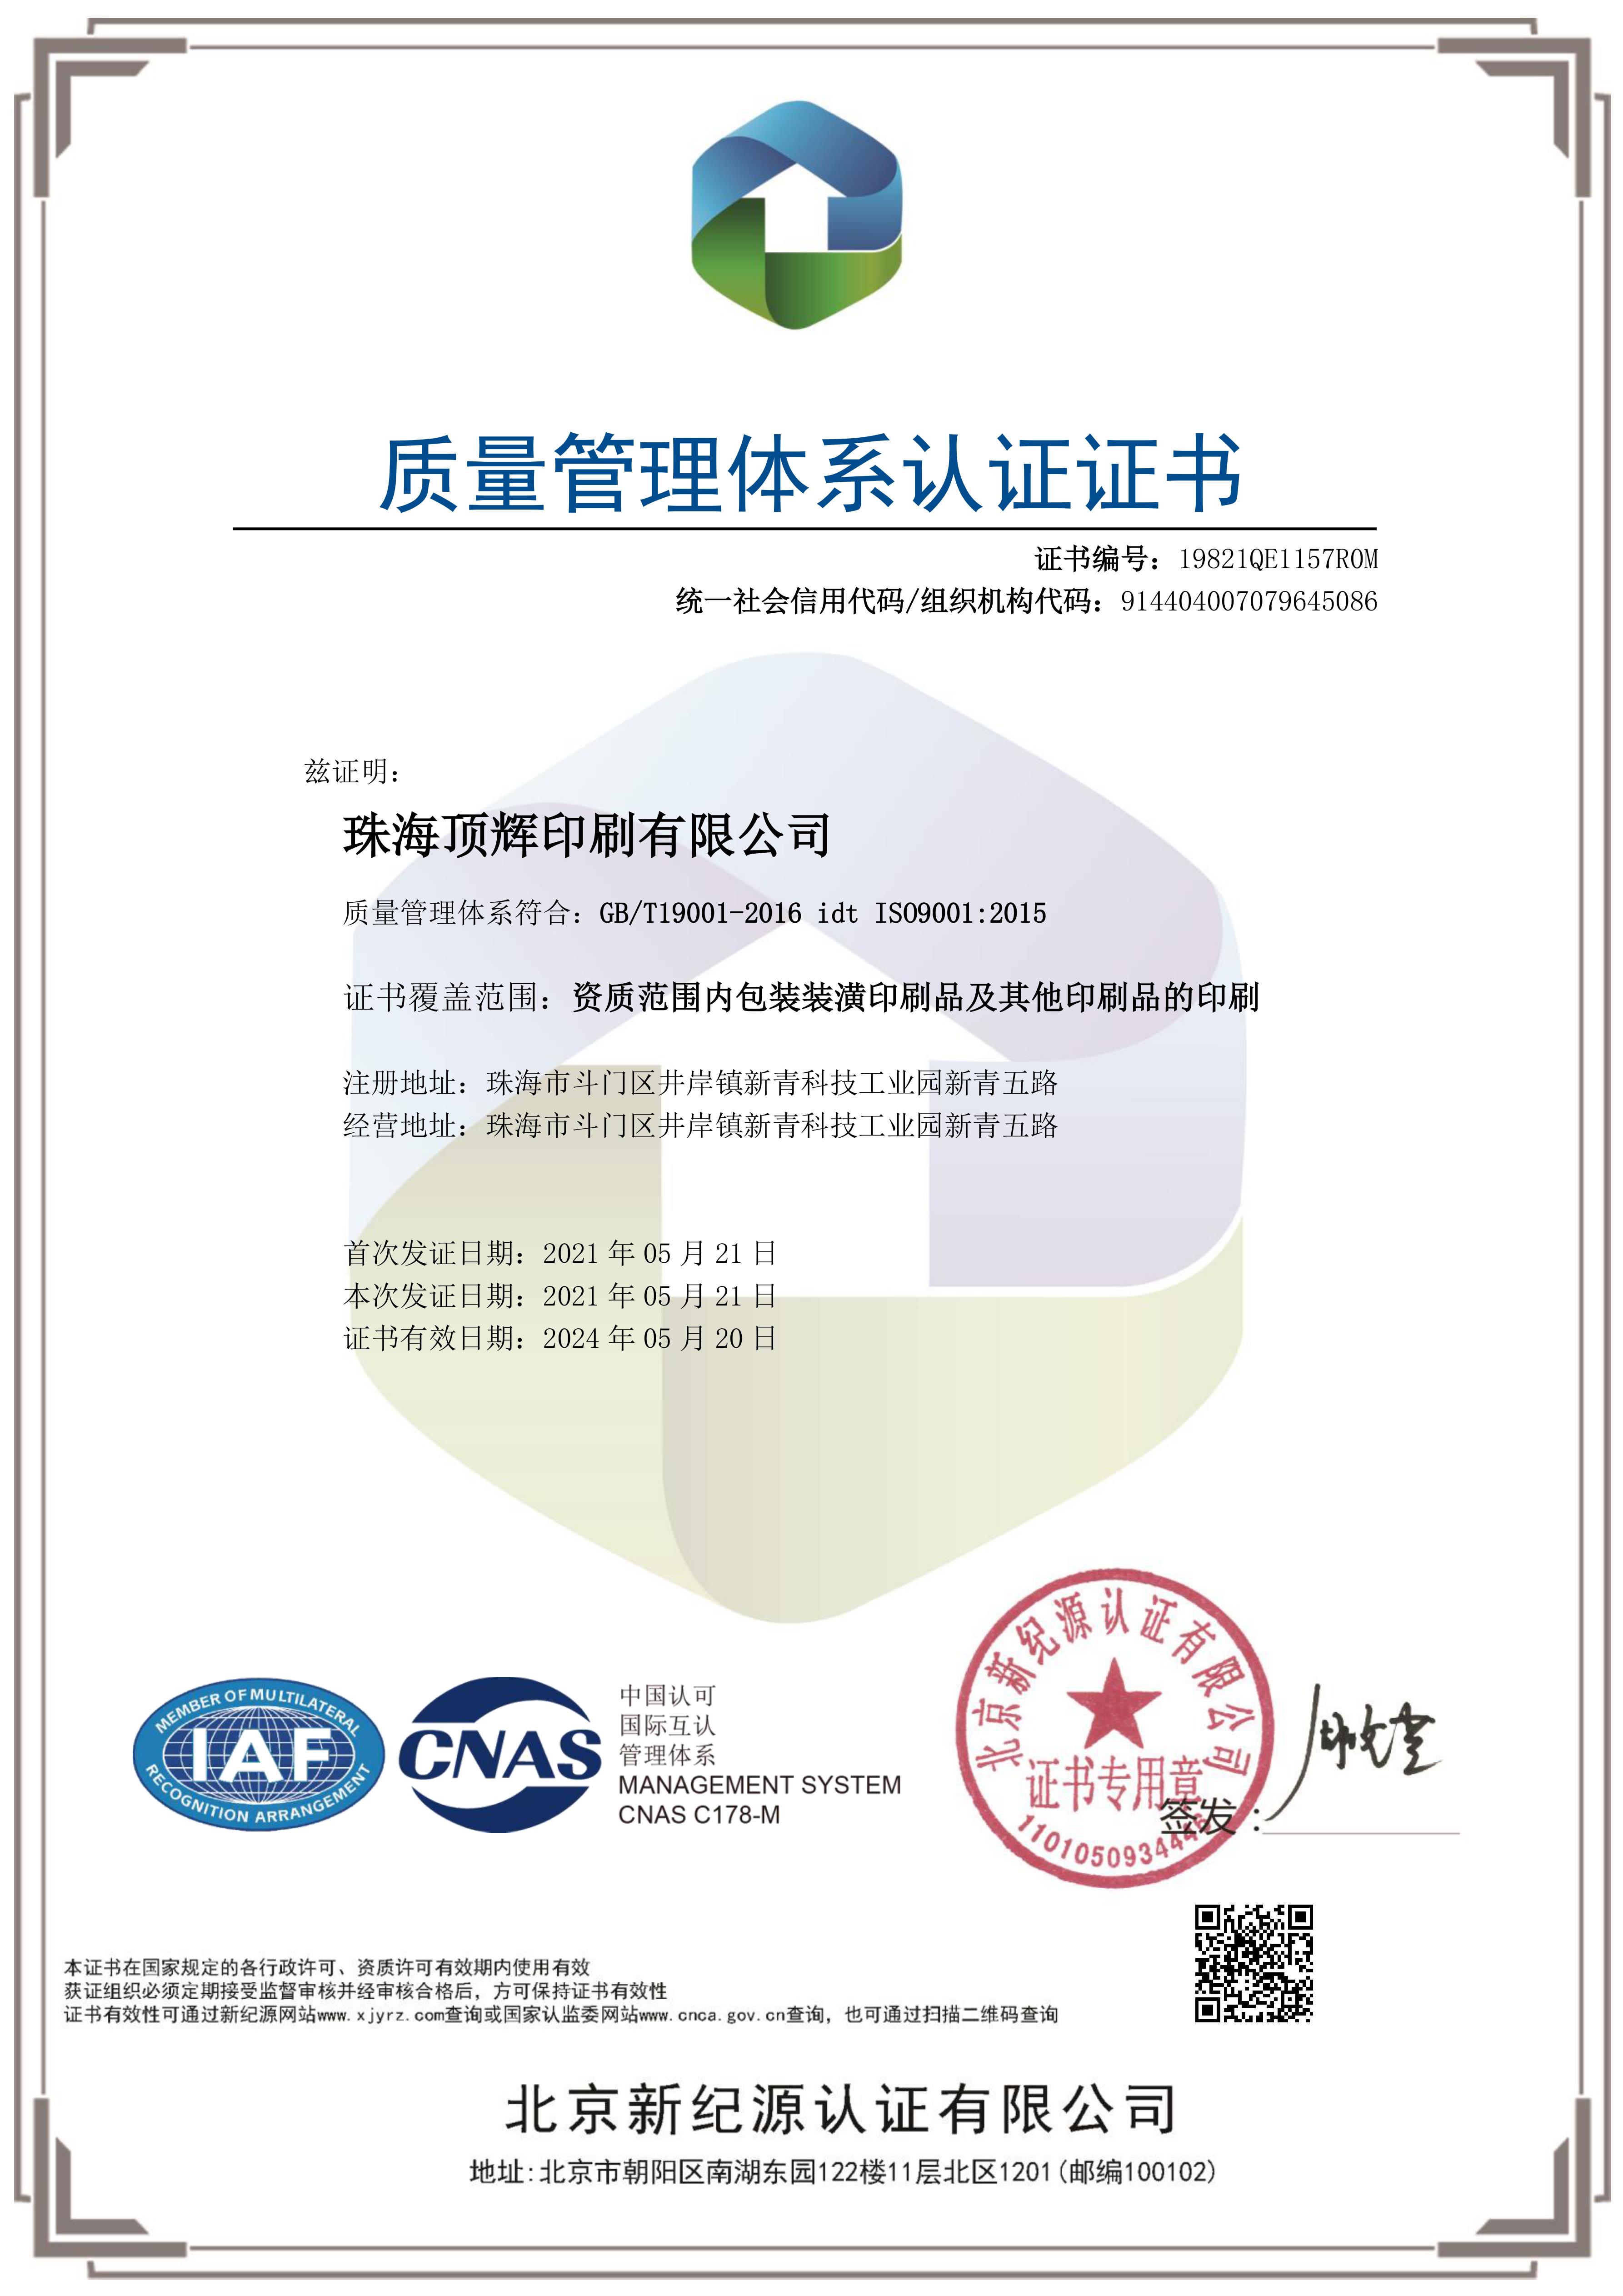 ISO 9001 中文 2021.jpg